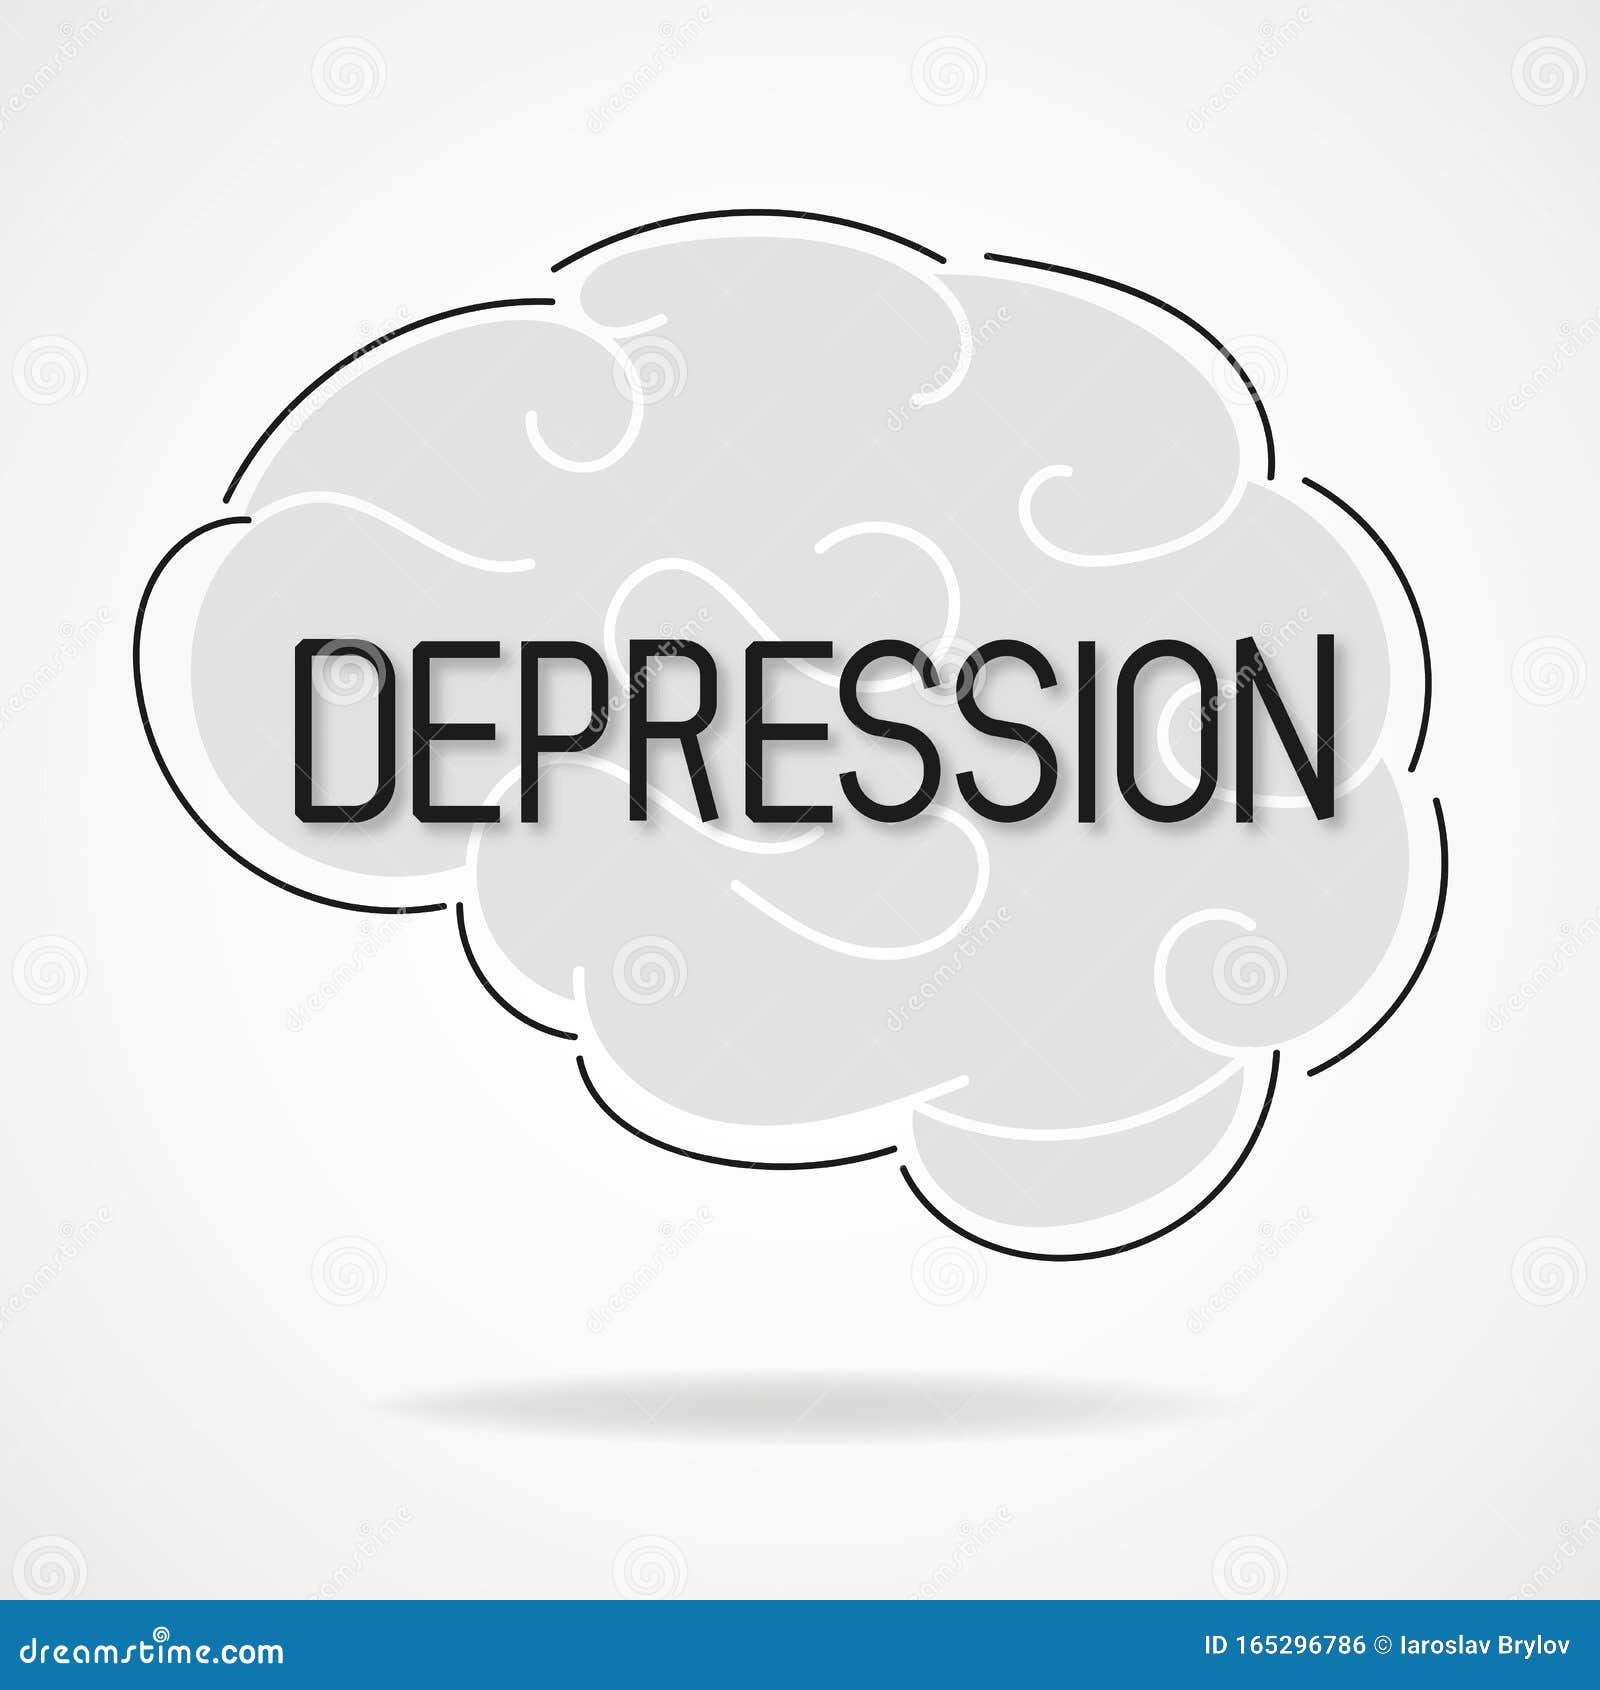 Vector Depressive State of Mind. Depression and Frustration Concept ...